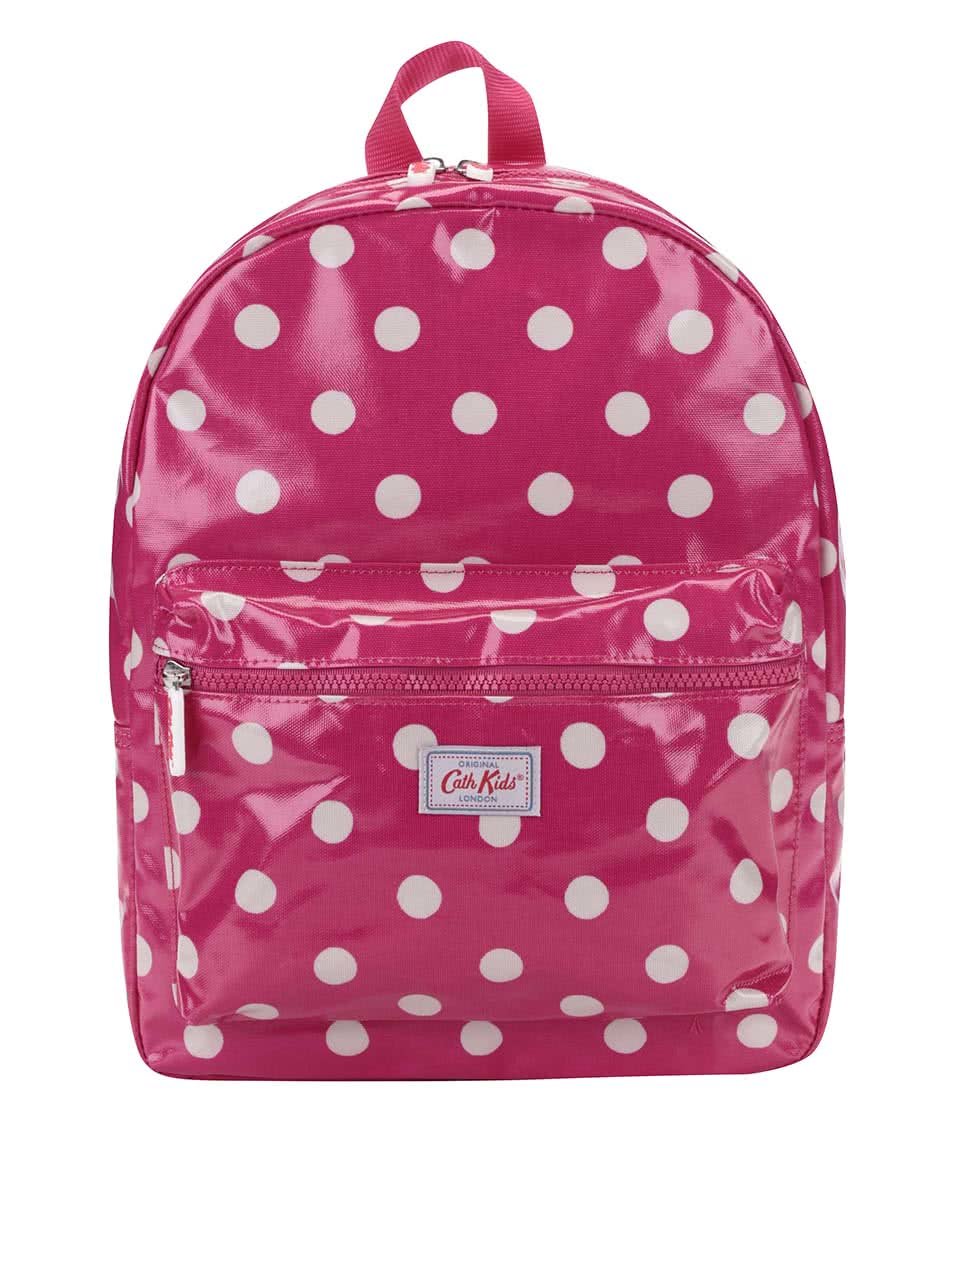 Růžový dětský batoh s puntíky Cath Kidston